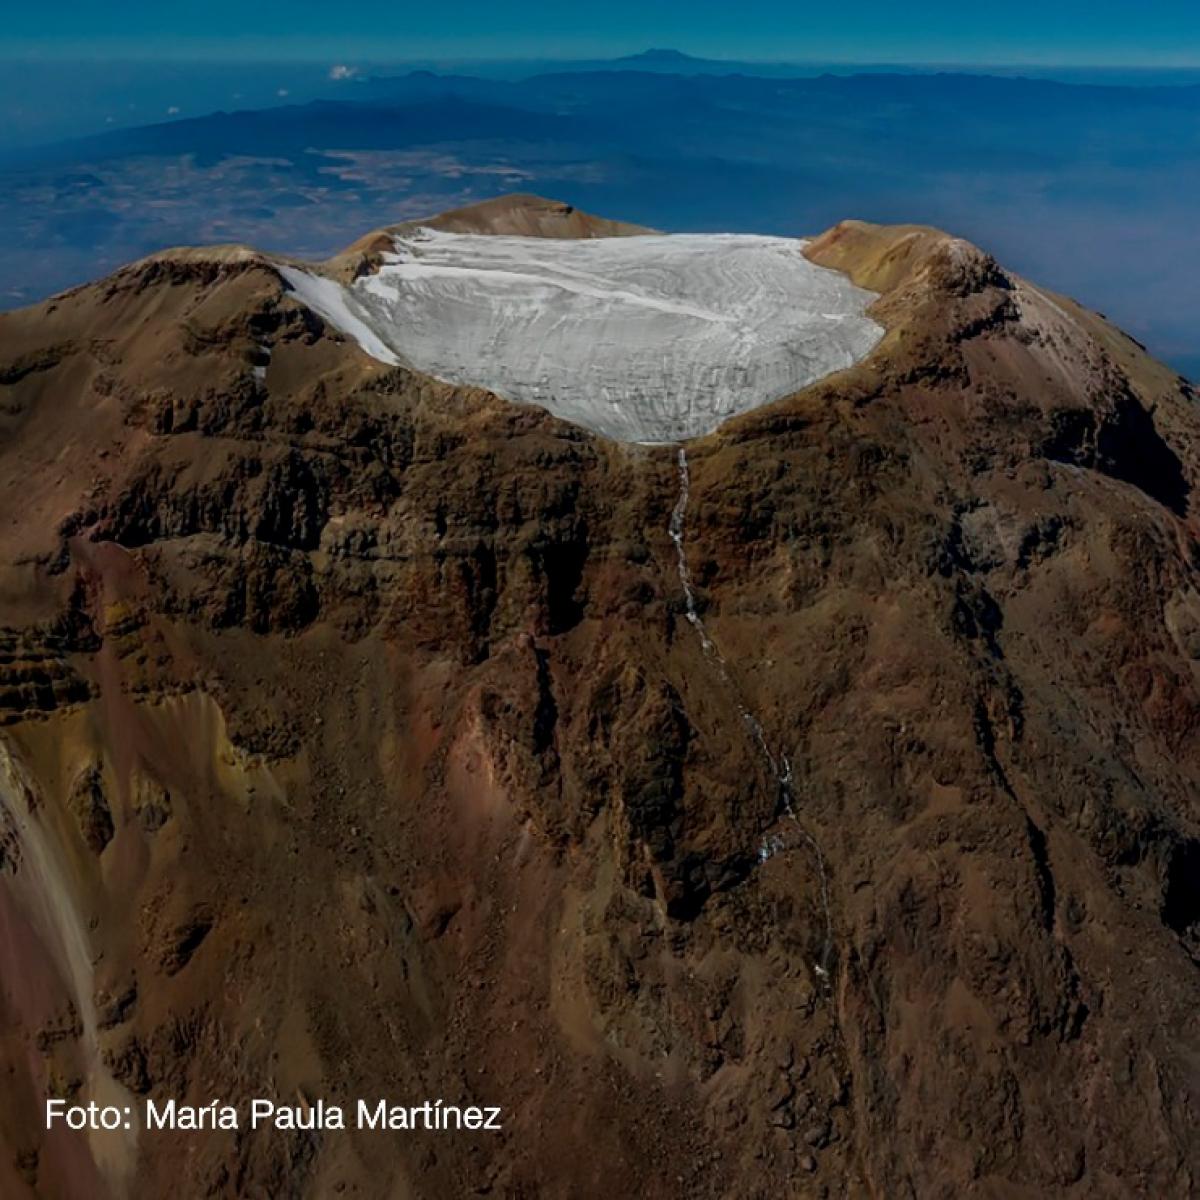 Fotografía del glaciar del pecho del Iztaccíhuatl realizada por María Paula Martínez.